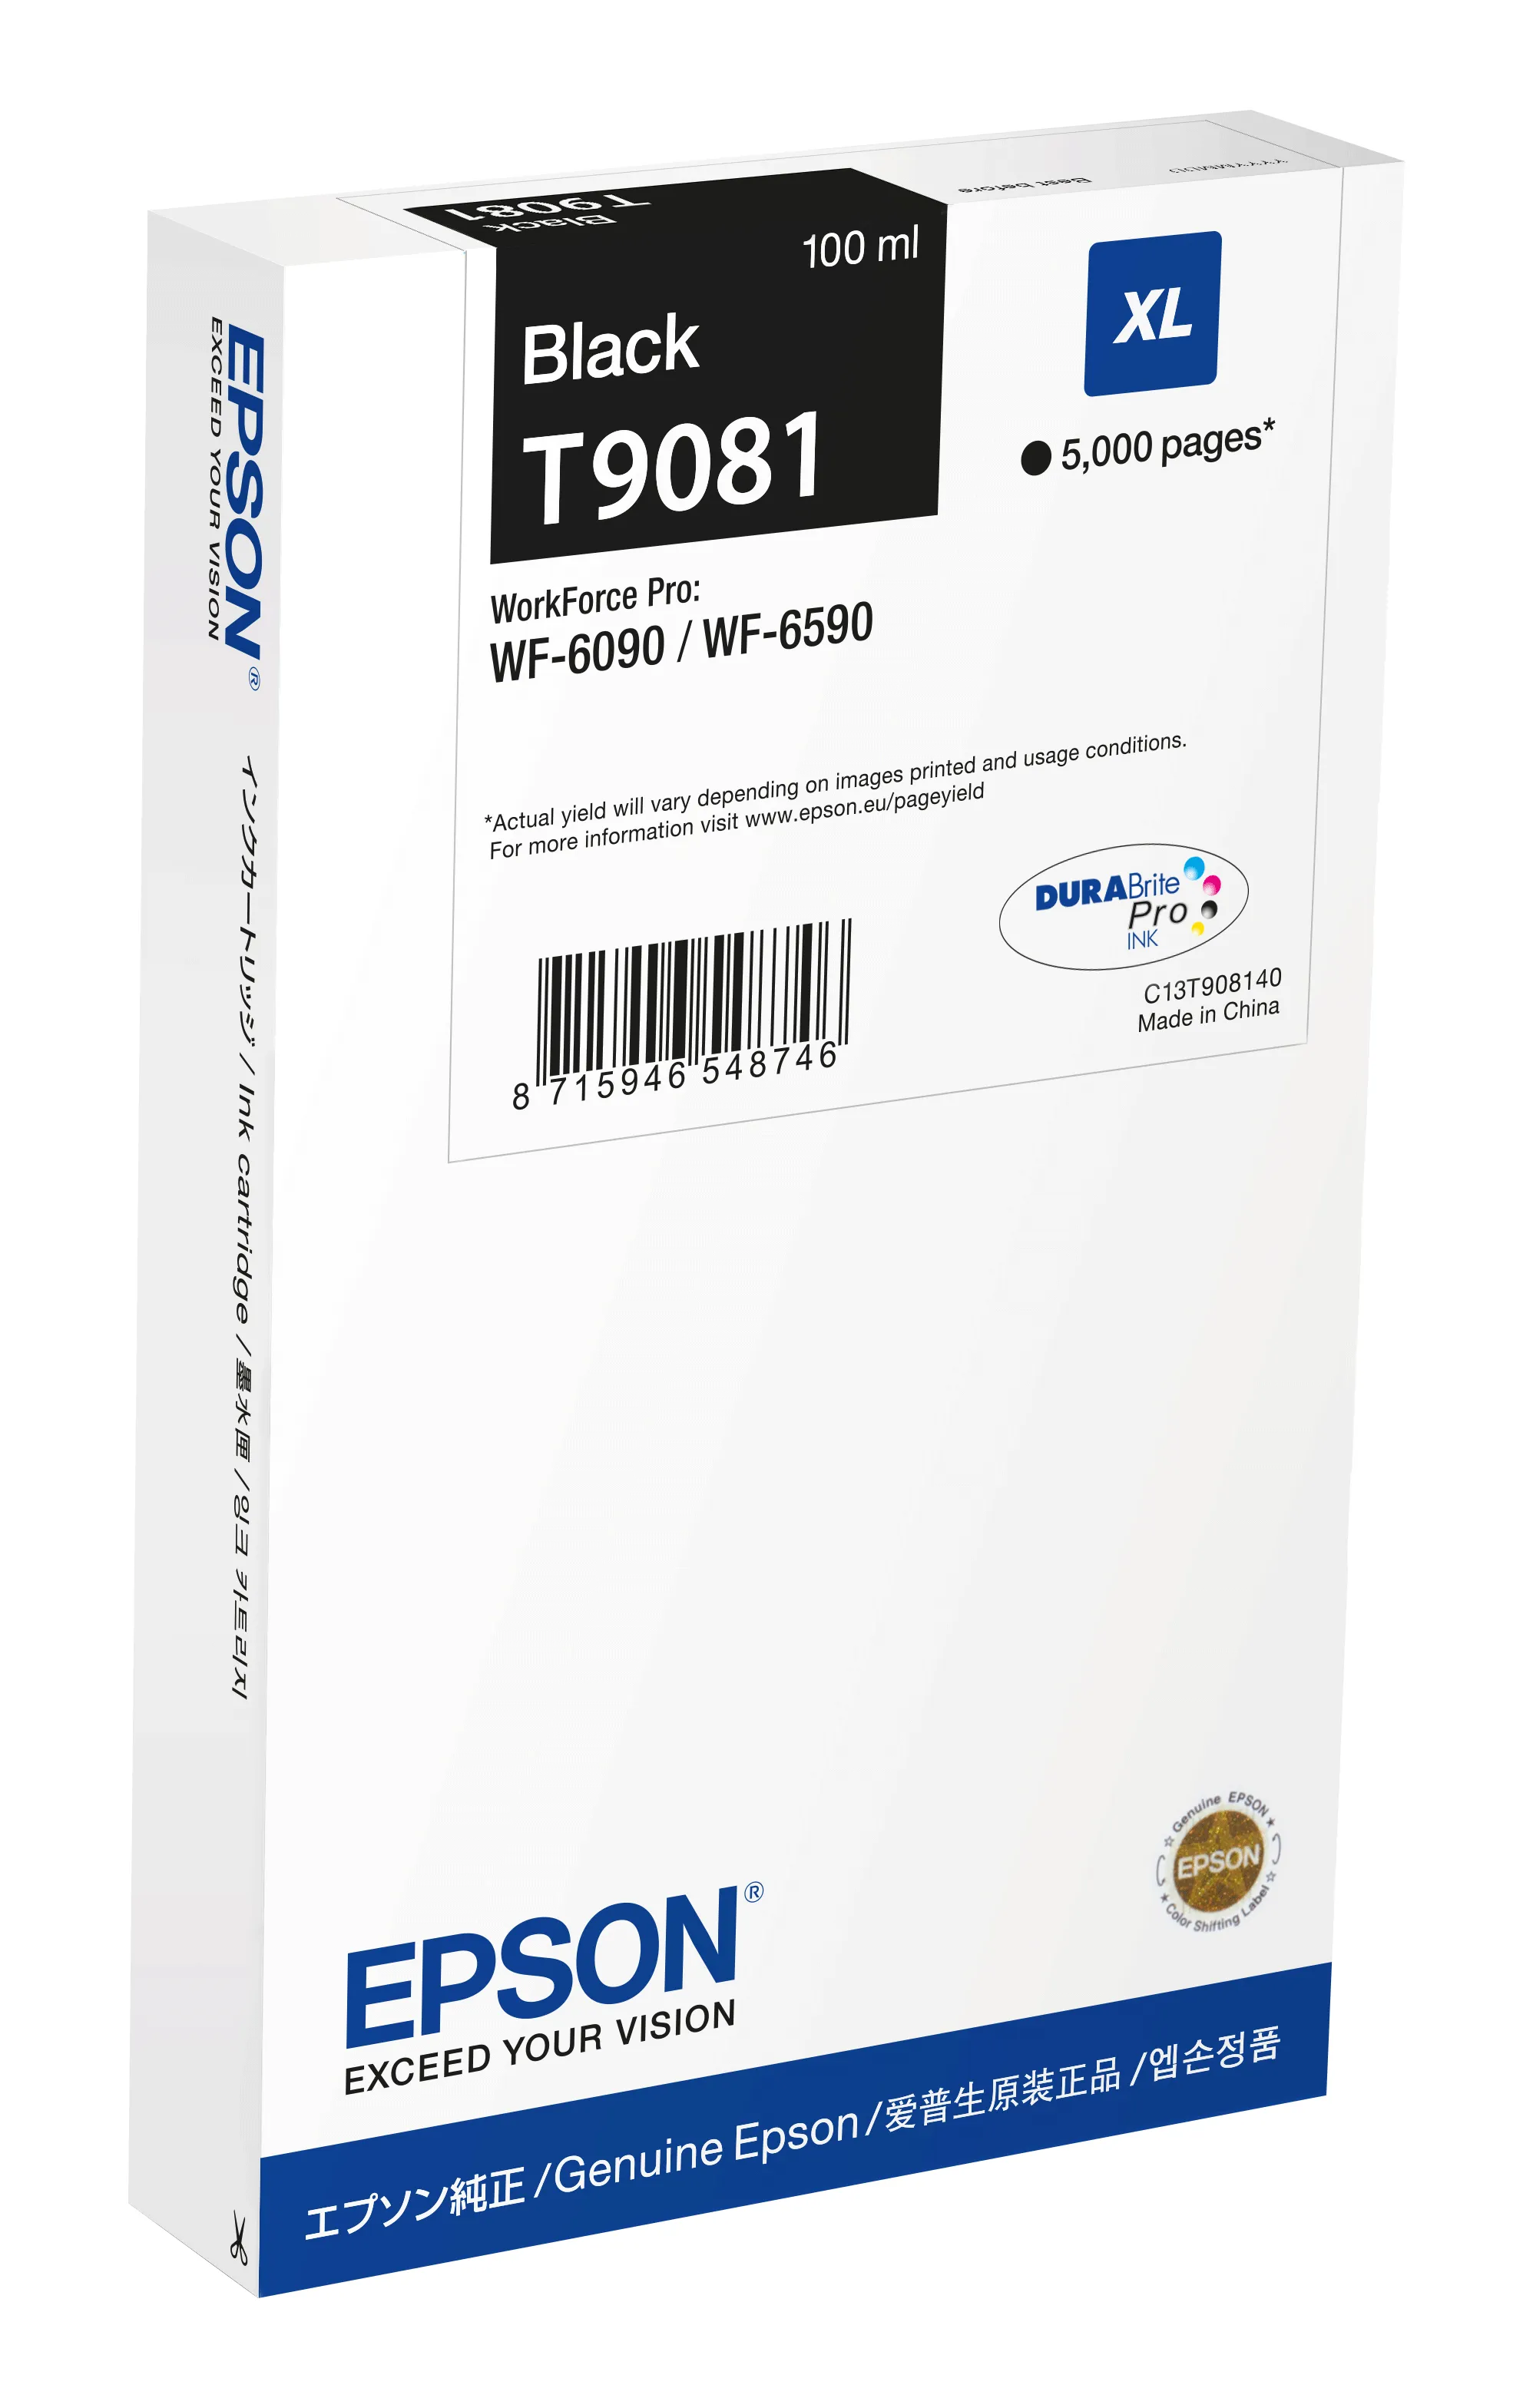 Achat EPSON WF-6xxx Ink Cartridge Black XL et autres produits de la marque Epson